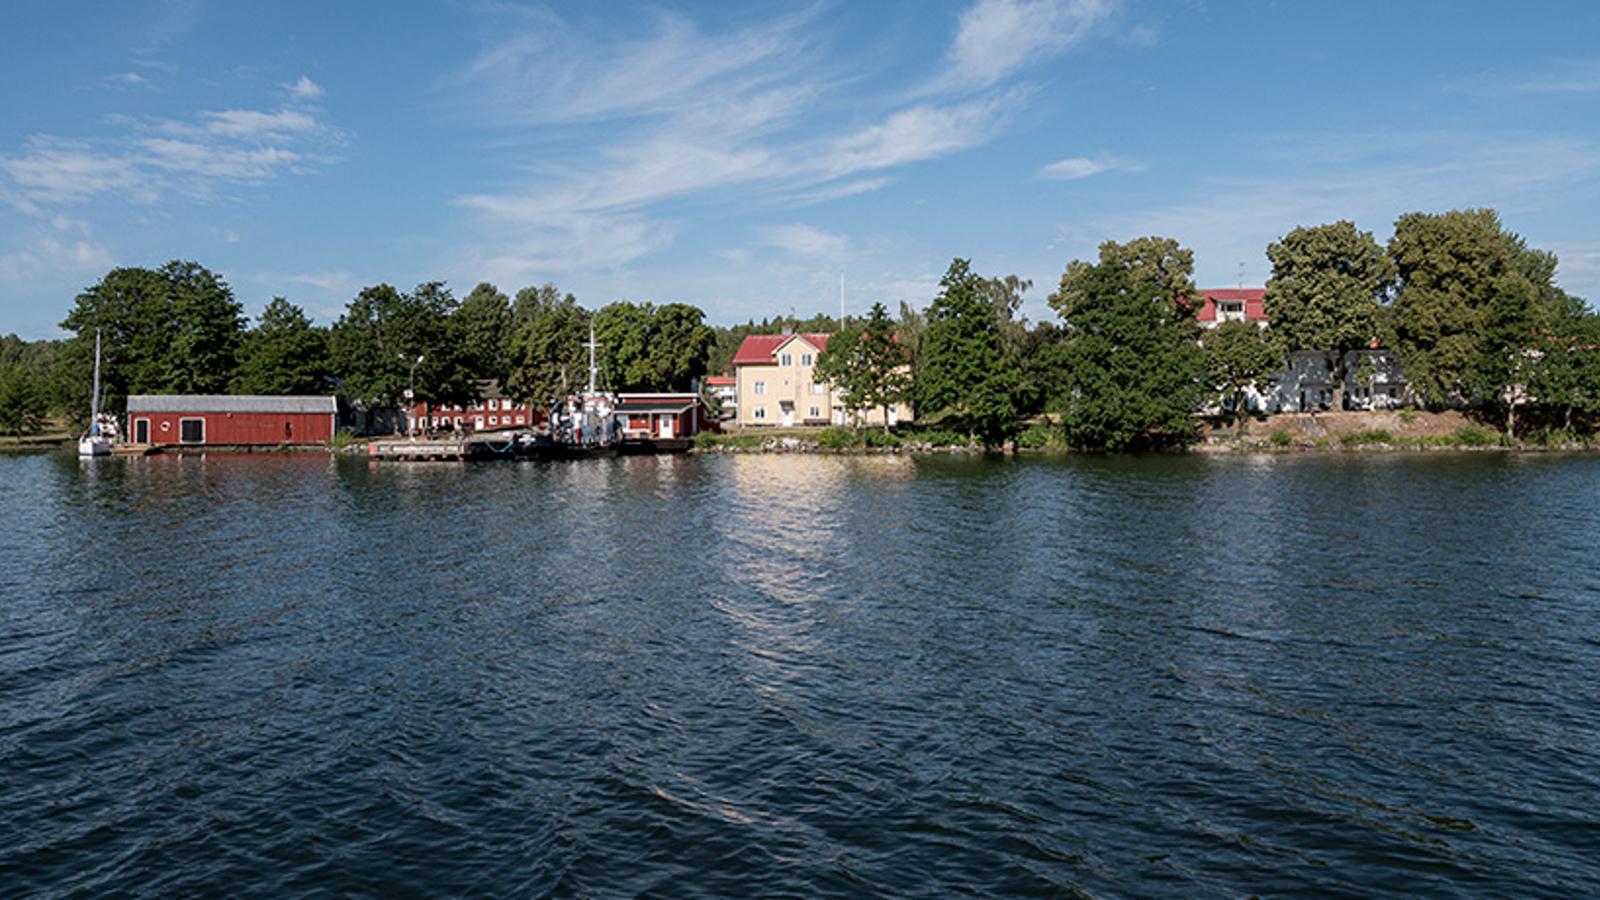 Hamnen på Kurön, Frälsningsarméns behandlingshem enligt HVB (hem för vård och boende), mellan 1912-2022. Bilden är tagen utifrån vattnet.